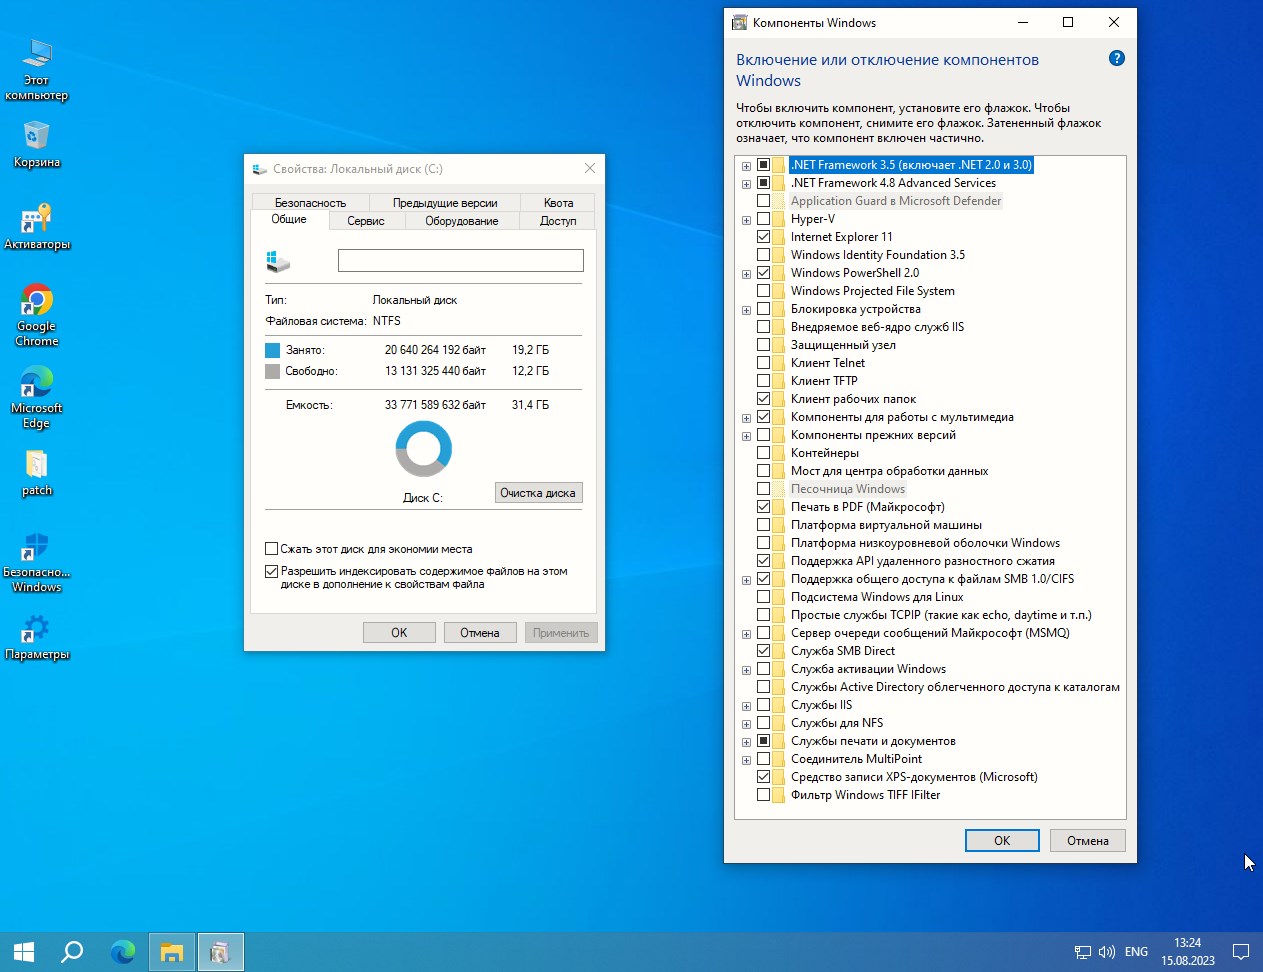  Cкачать Windows 10 x86/x64 Pro 22H2 сборка с активацией и оптимизацией бесплатно торрент